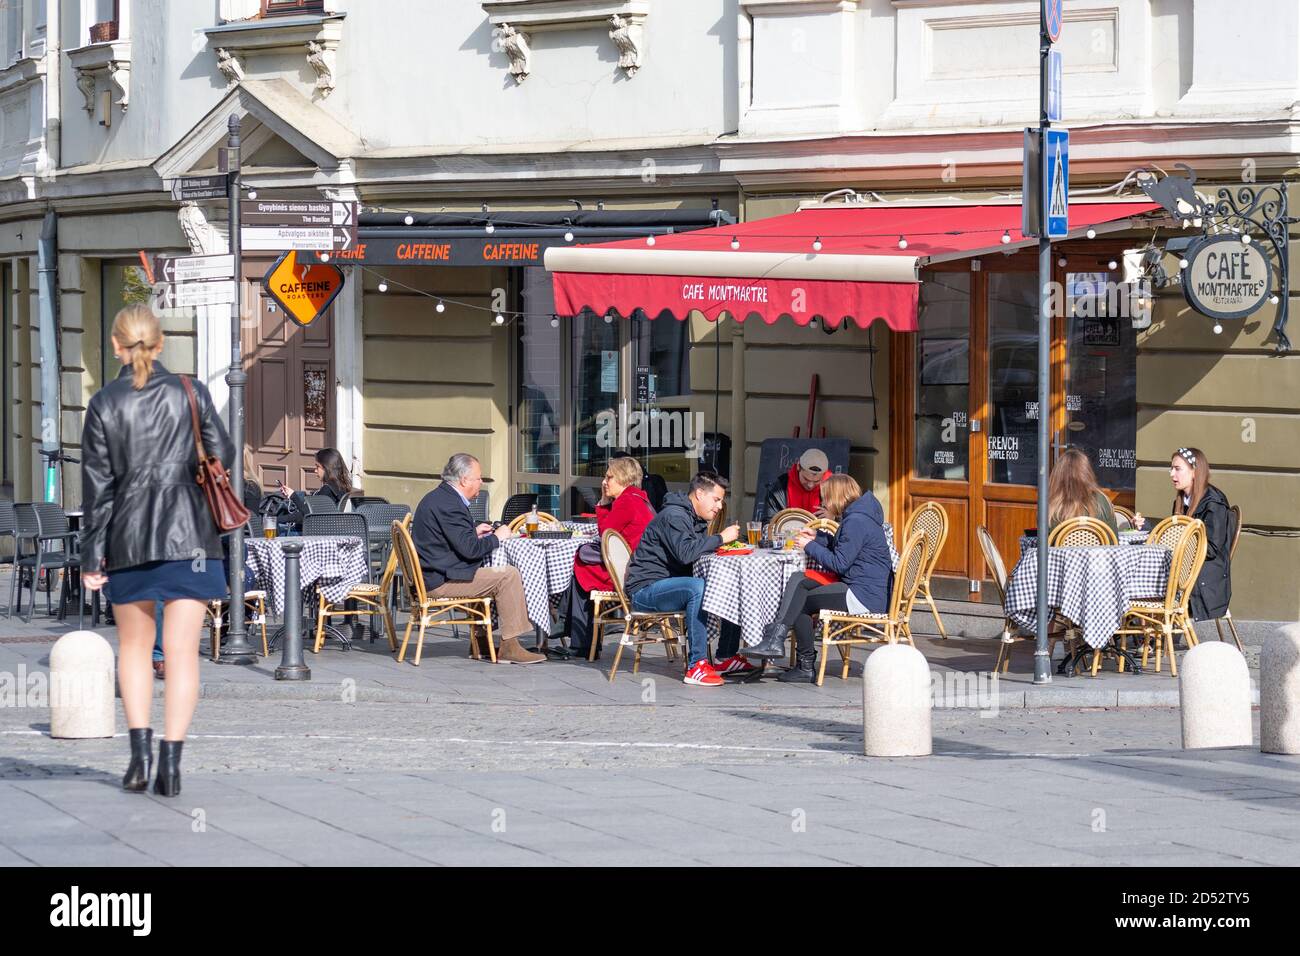 Café im Freien, Bar oder Restaurant mit Gästen an den Tischen während des Covid- oder Coronavirus-Ausbruchs Stockfoto